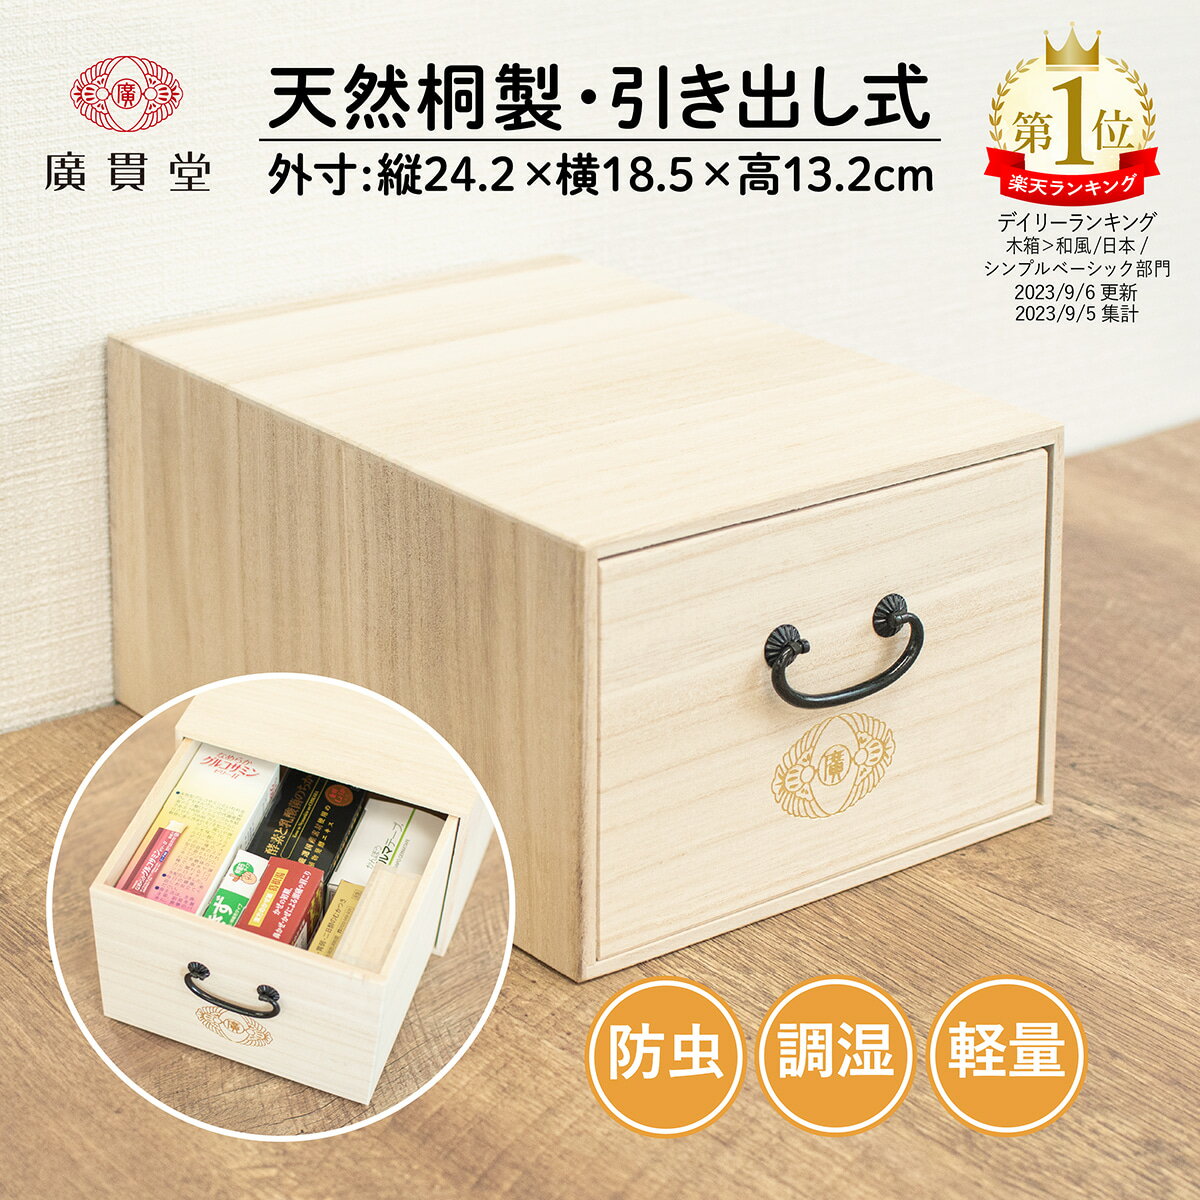 広貫堂 薬箱 桐製 日本製 外寸 24.2cm x 横18.5cm x 高さ13.2cm 桐箱 小物 小物入れ 小物ケース 天然木 木製 木箱 救…